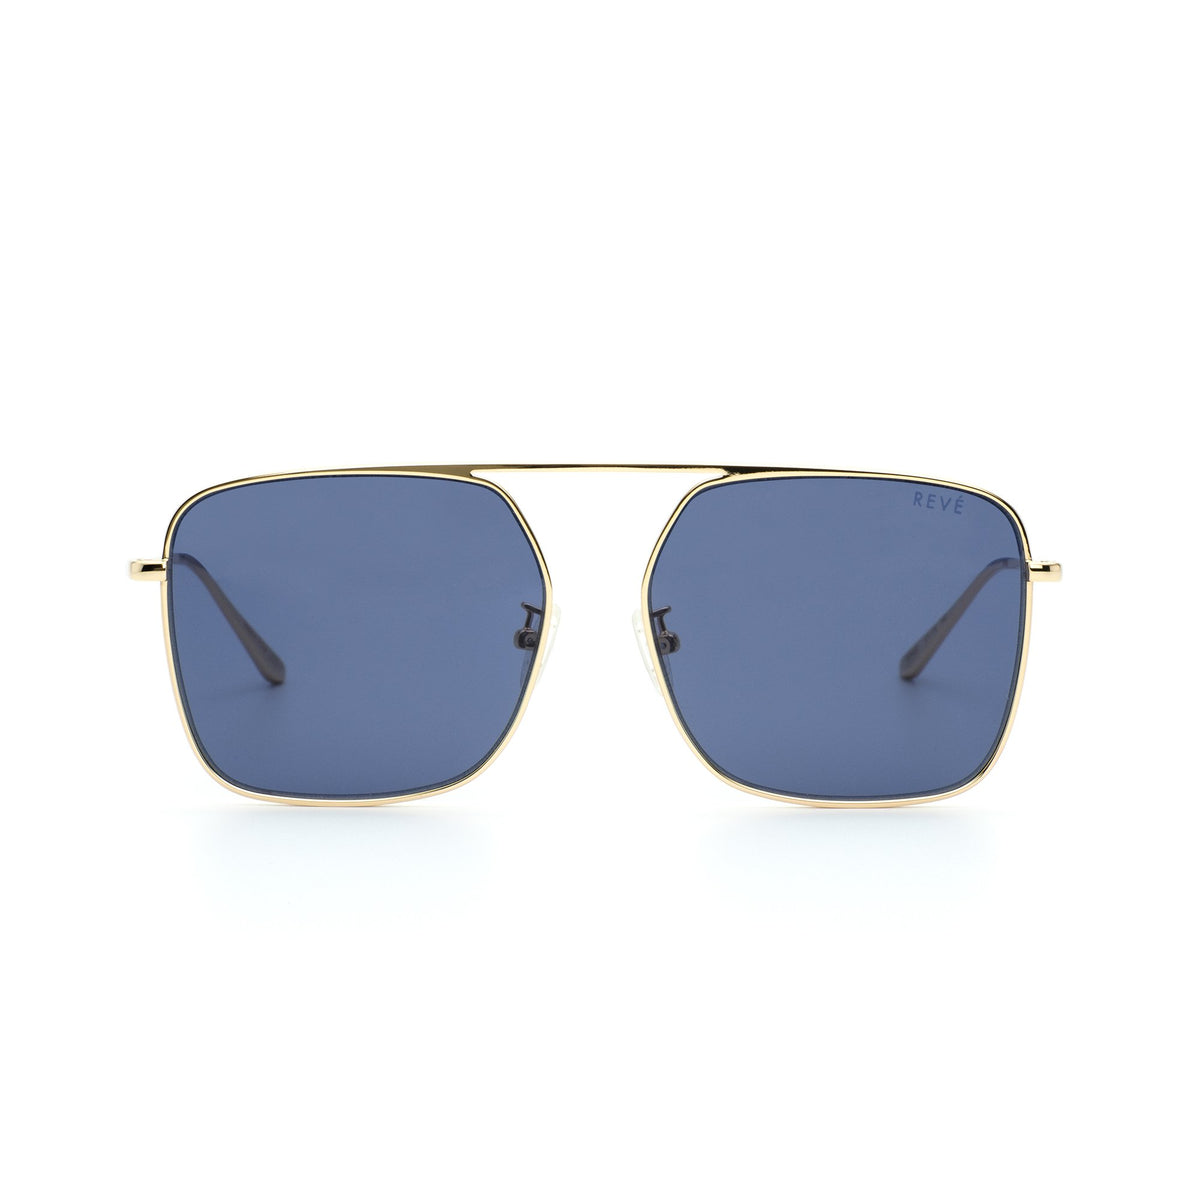 BPM | Navy Blue Square framed sunglasses